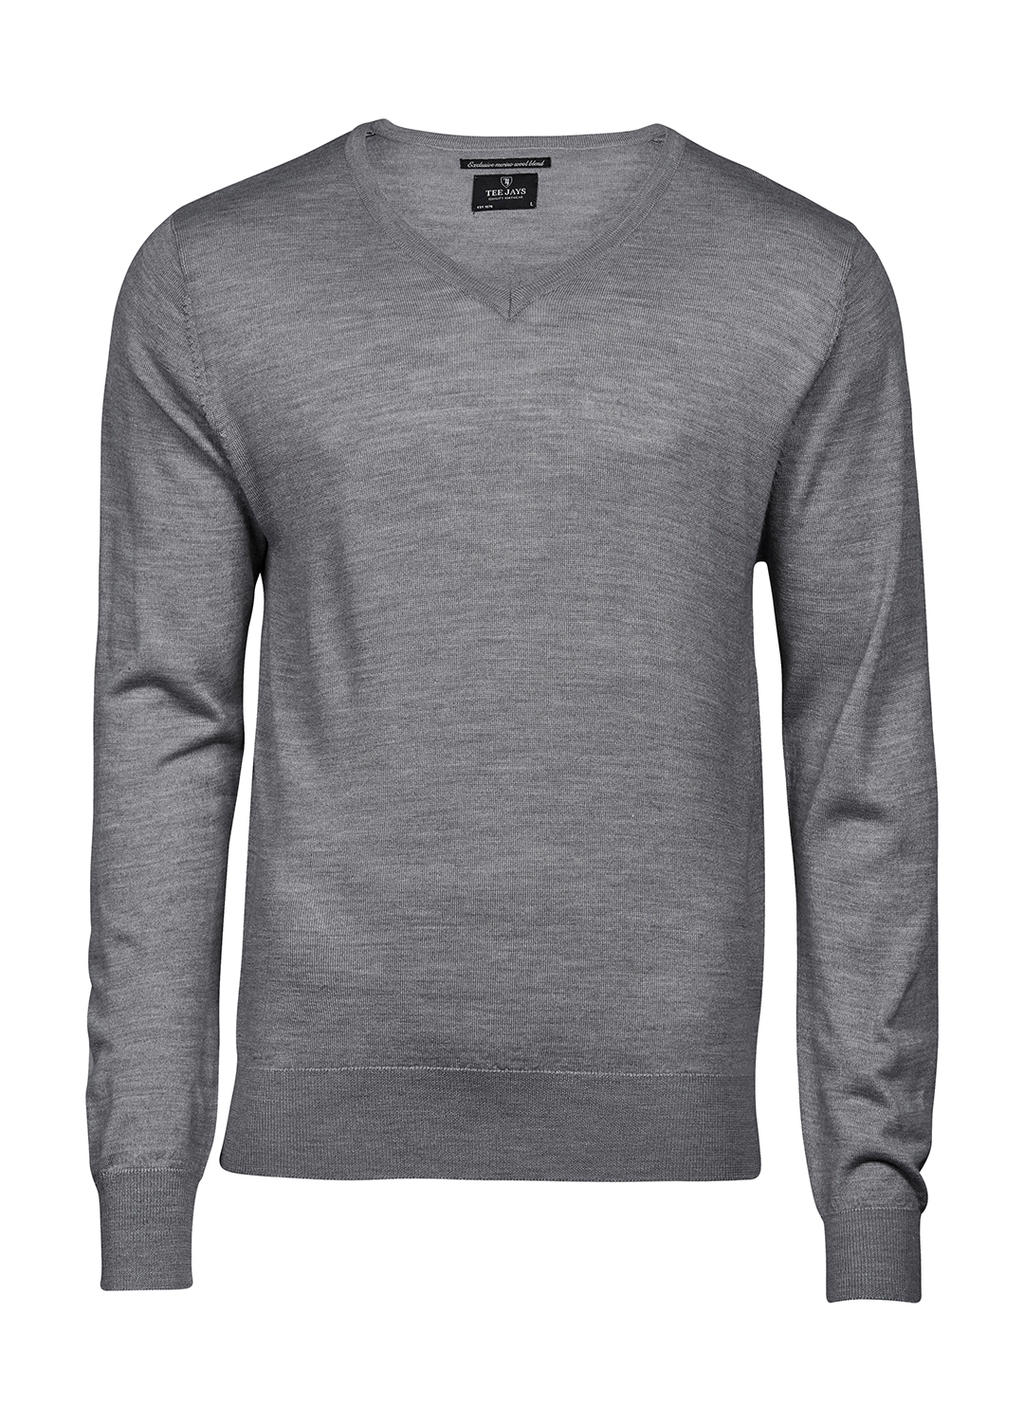  Mens V-Neck Sweater in Farbe Light Grey